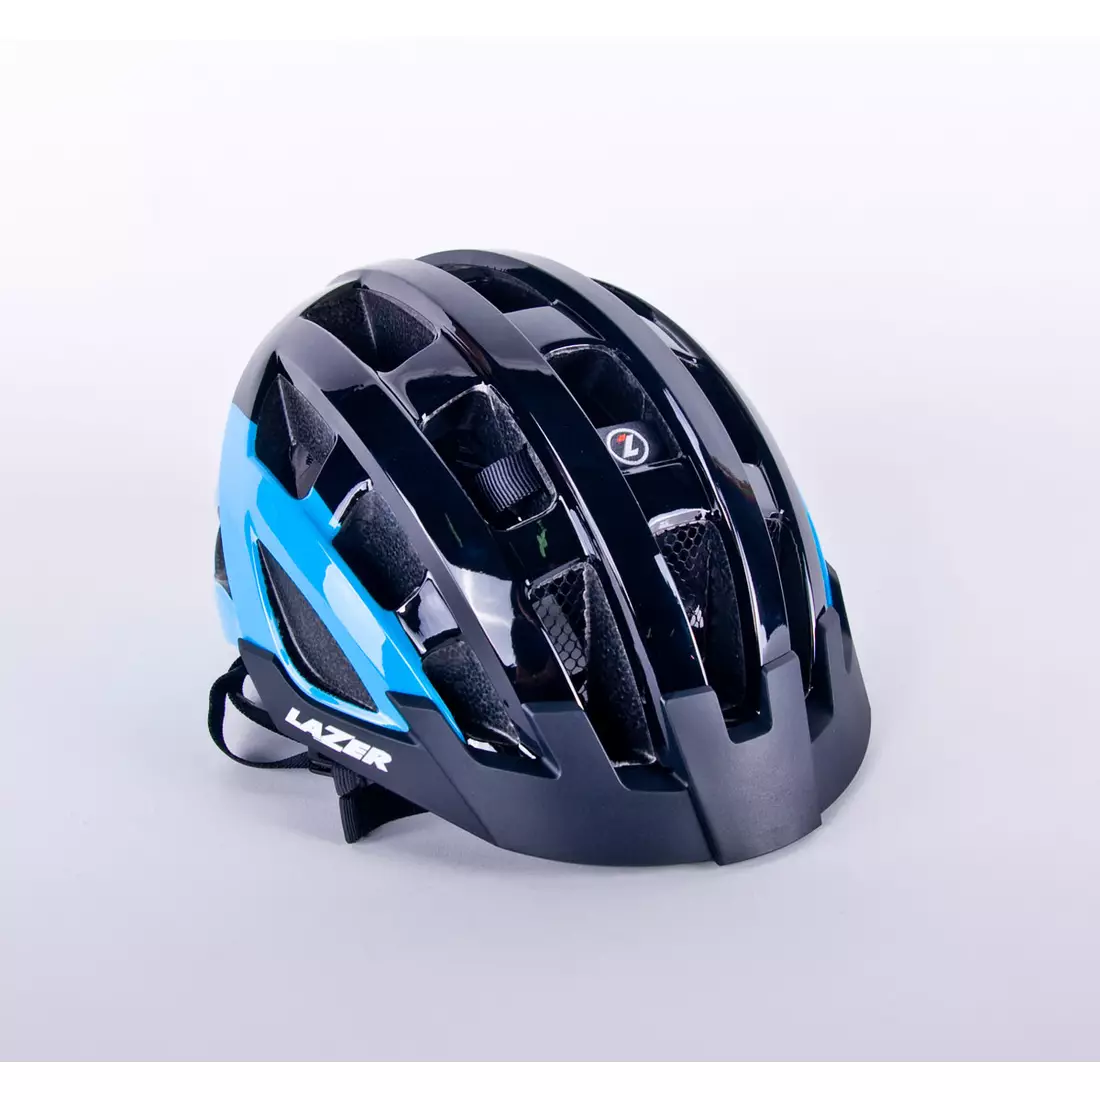 LAZER Compact DLX Fahrradhelm LED Insektennetz blau schwarz glänzend